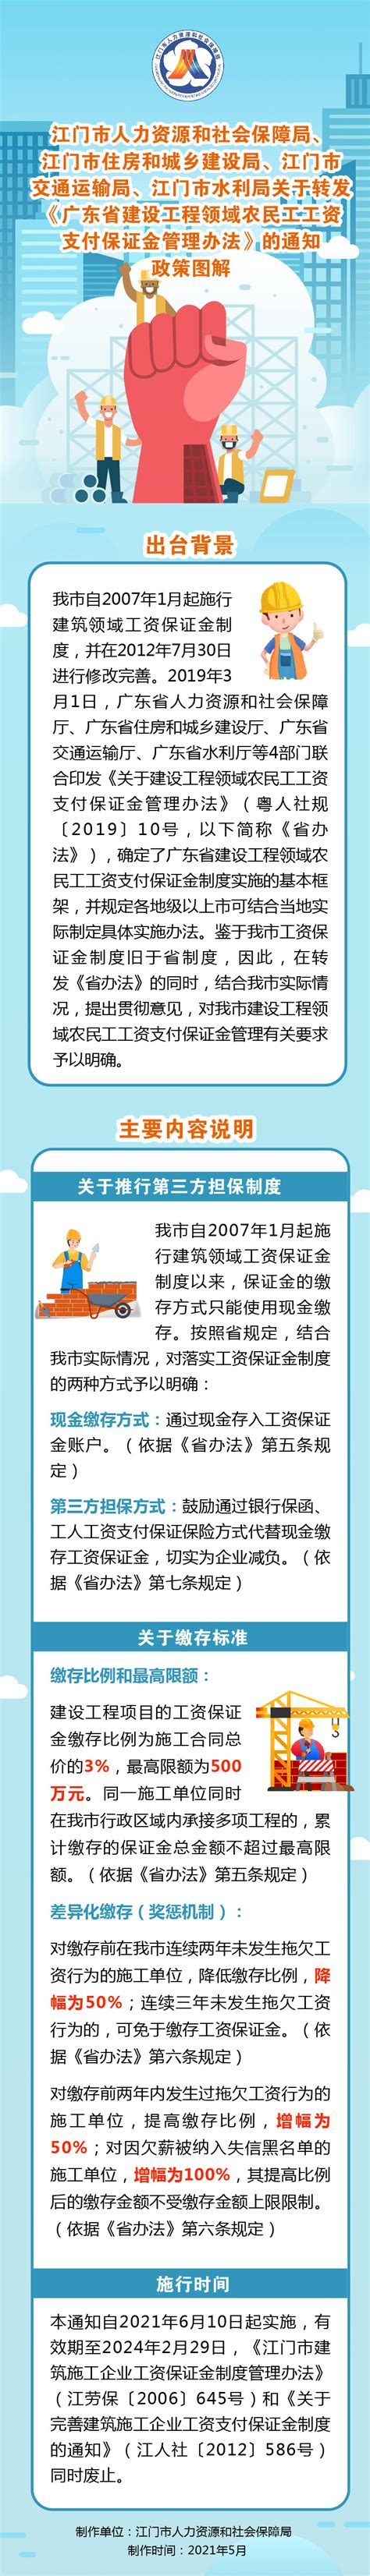 广东江门一季度132个重大项目动工投产 总投资额719.27亿元 - 广东 - 中国产业经济信息网